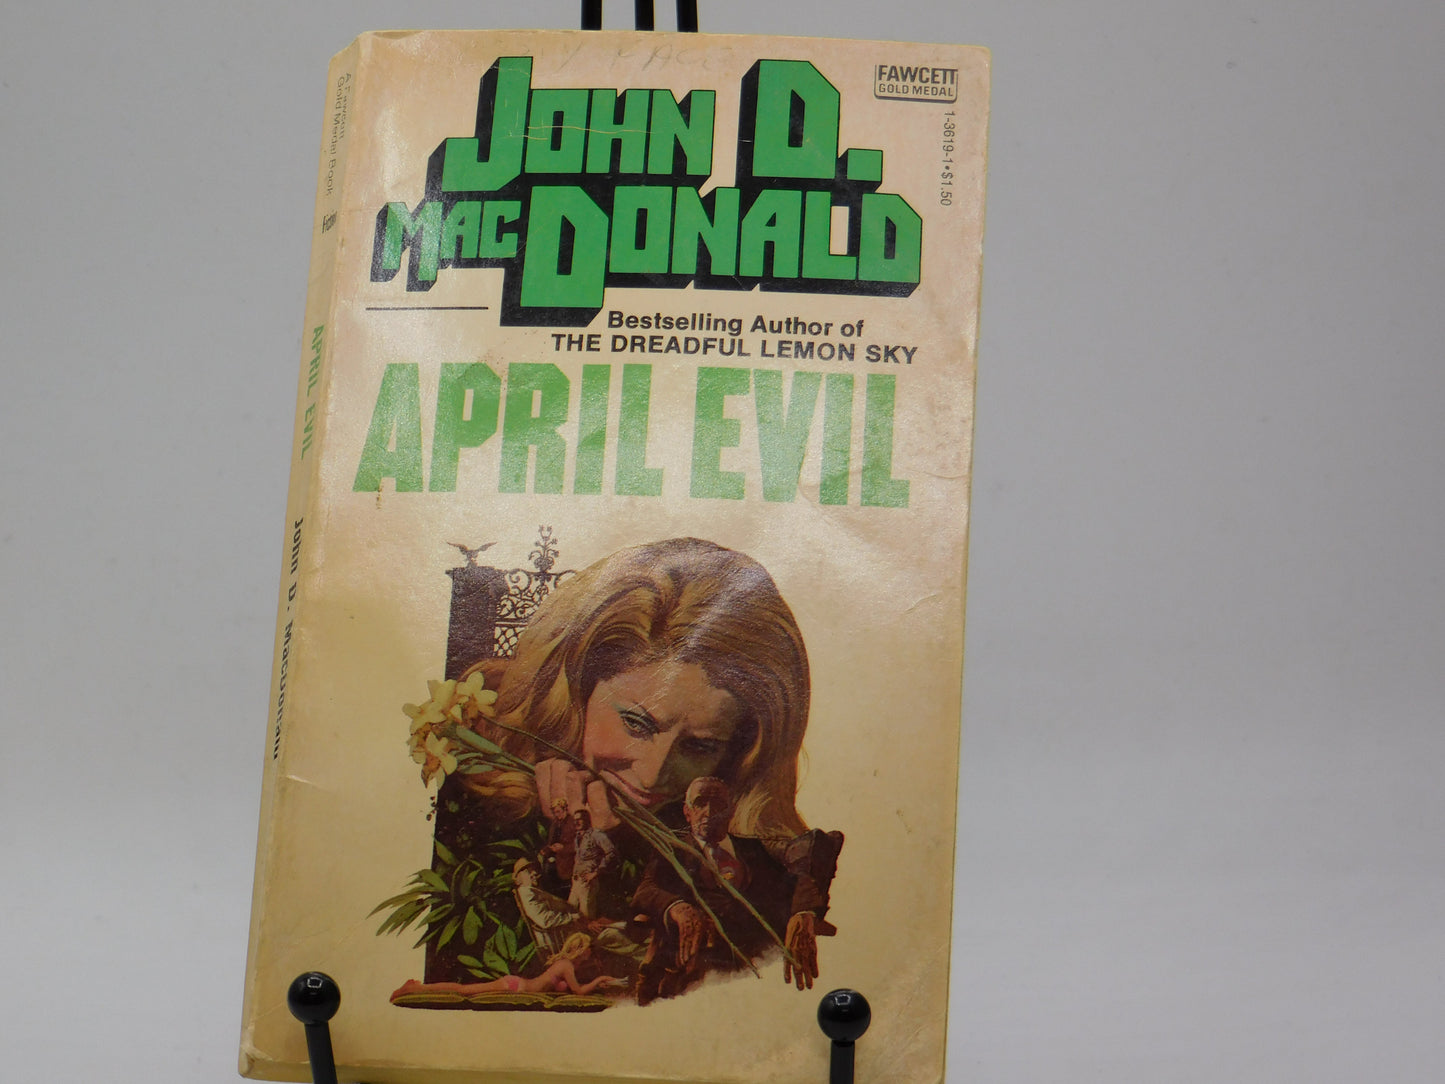 April Evil by John D. Macdonald